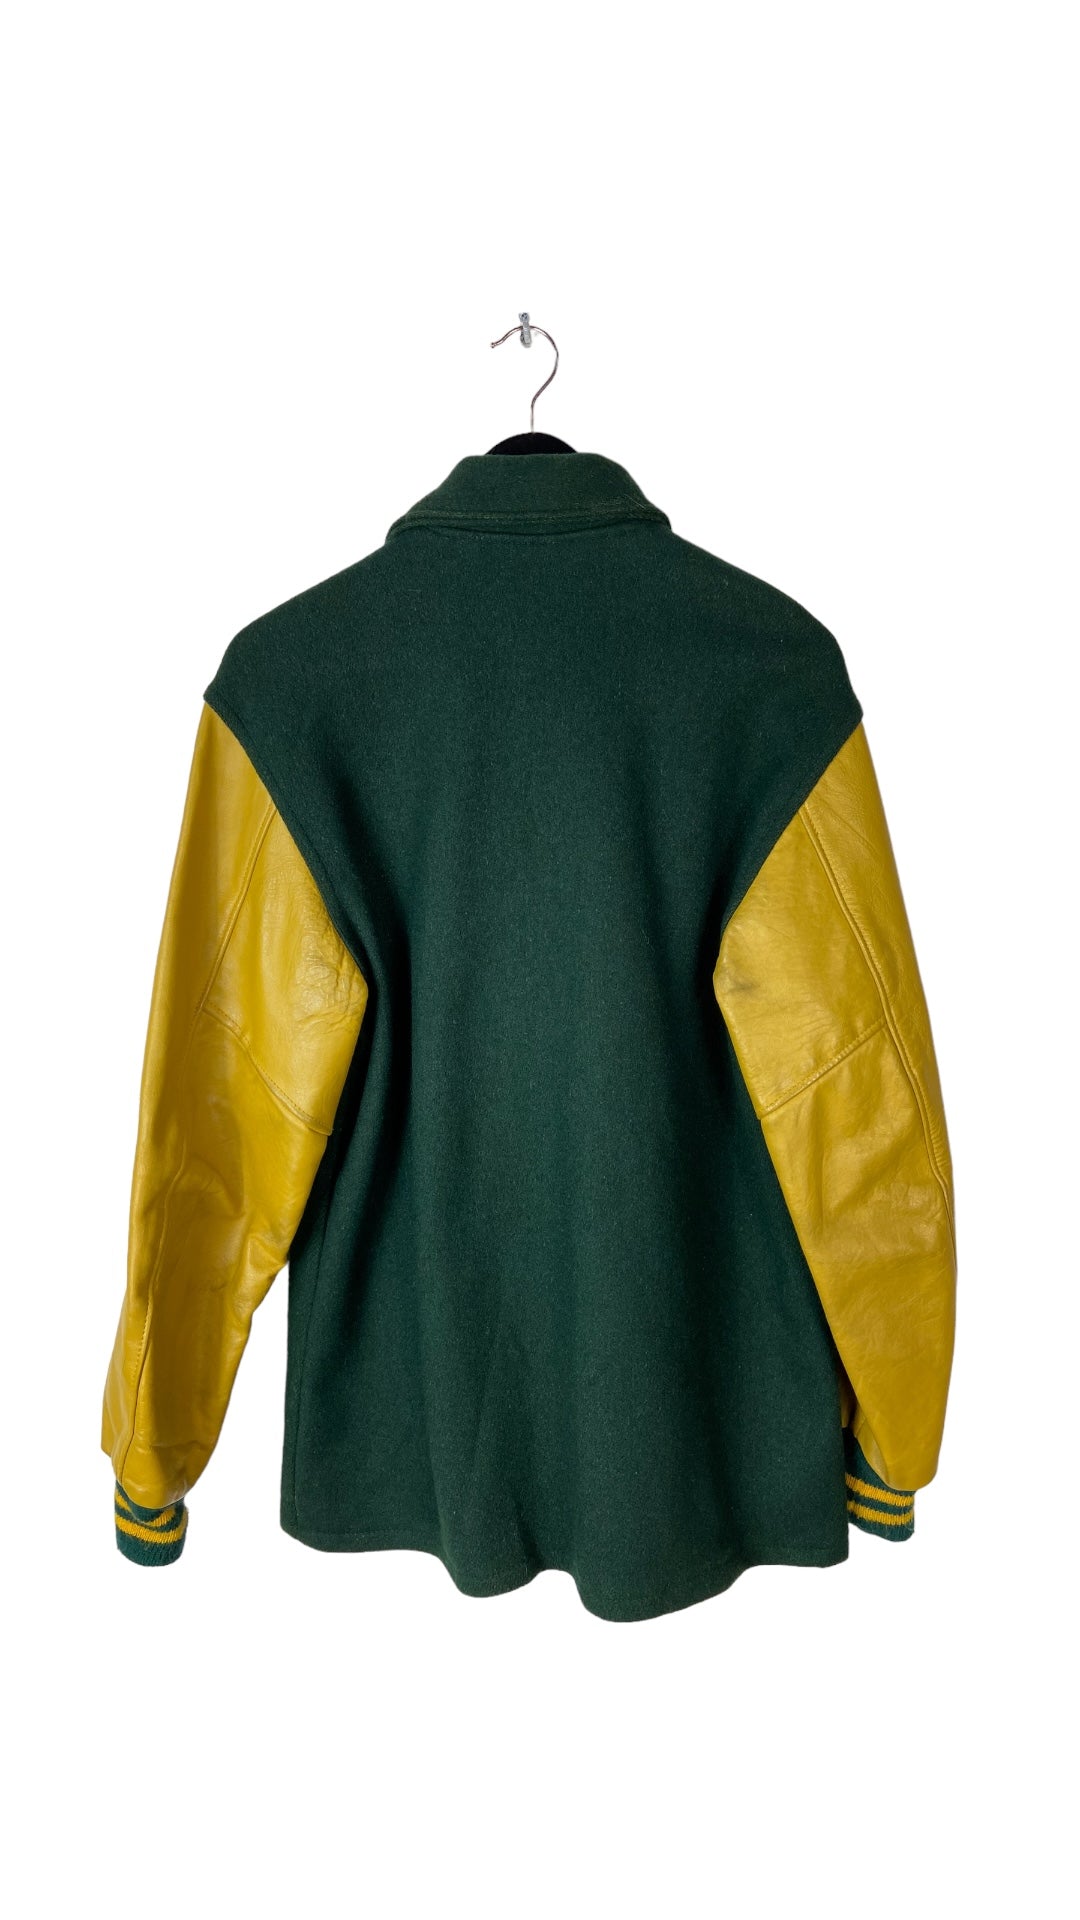 VTG Green/Yellow Letterman Jacket Sz L